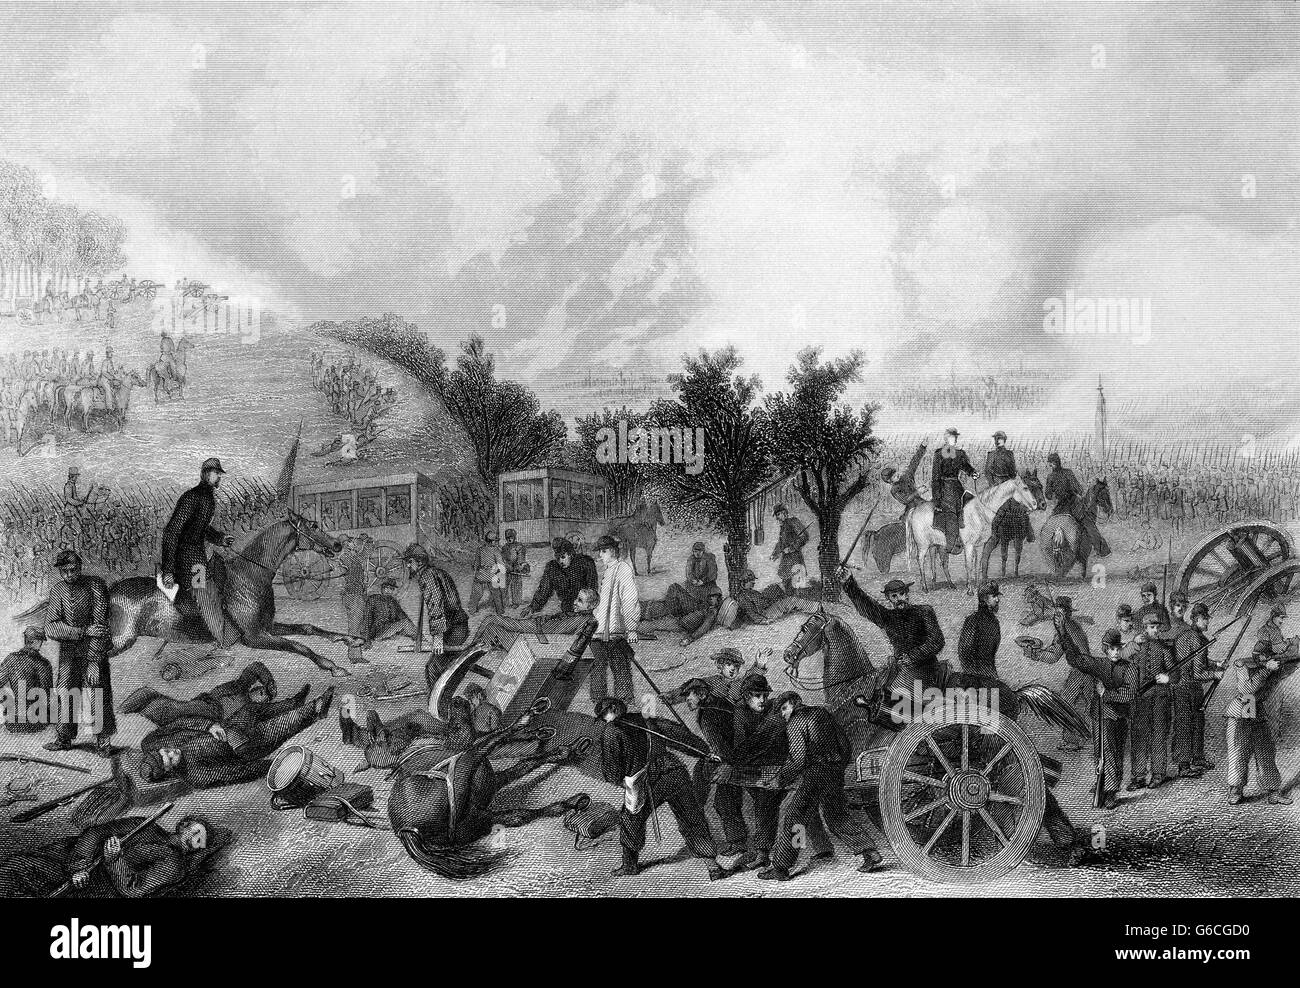 1860ER JAHRE JULI 1863 SCHLACHT VON GETTYSBURG Stockfoto